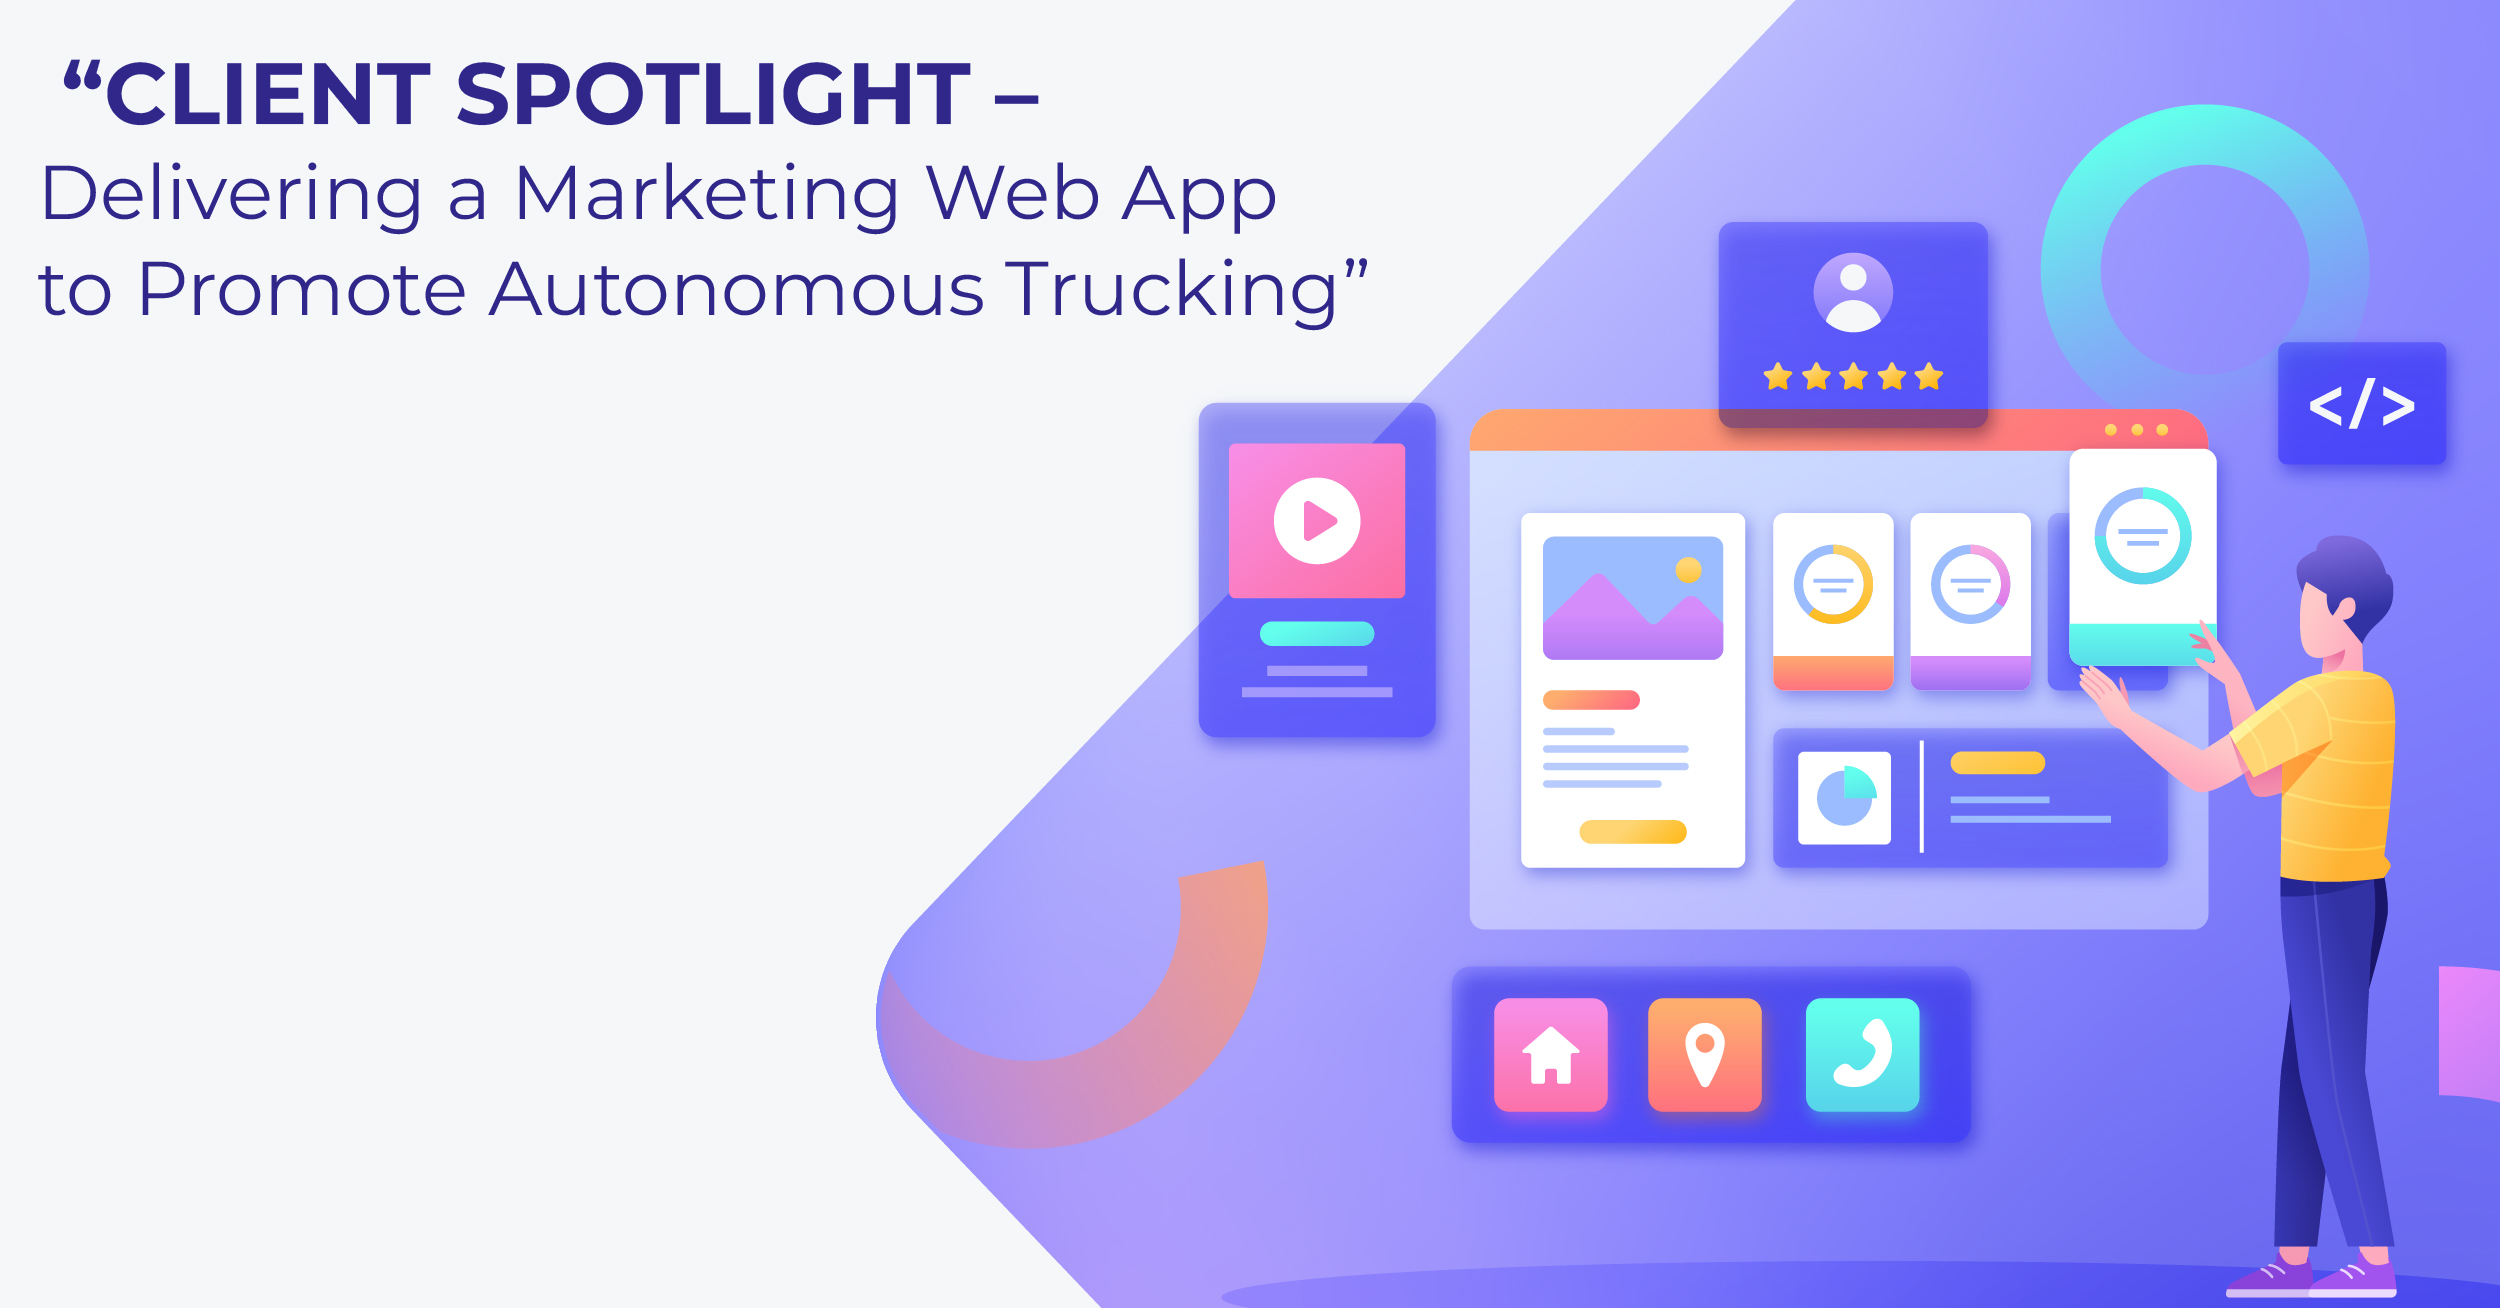 “Client Spotlight – Delivering a Marketing Web App to Promote Autonomous Trucking”